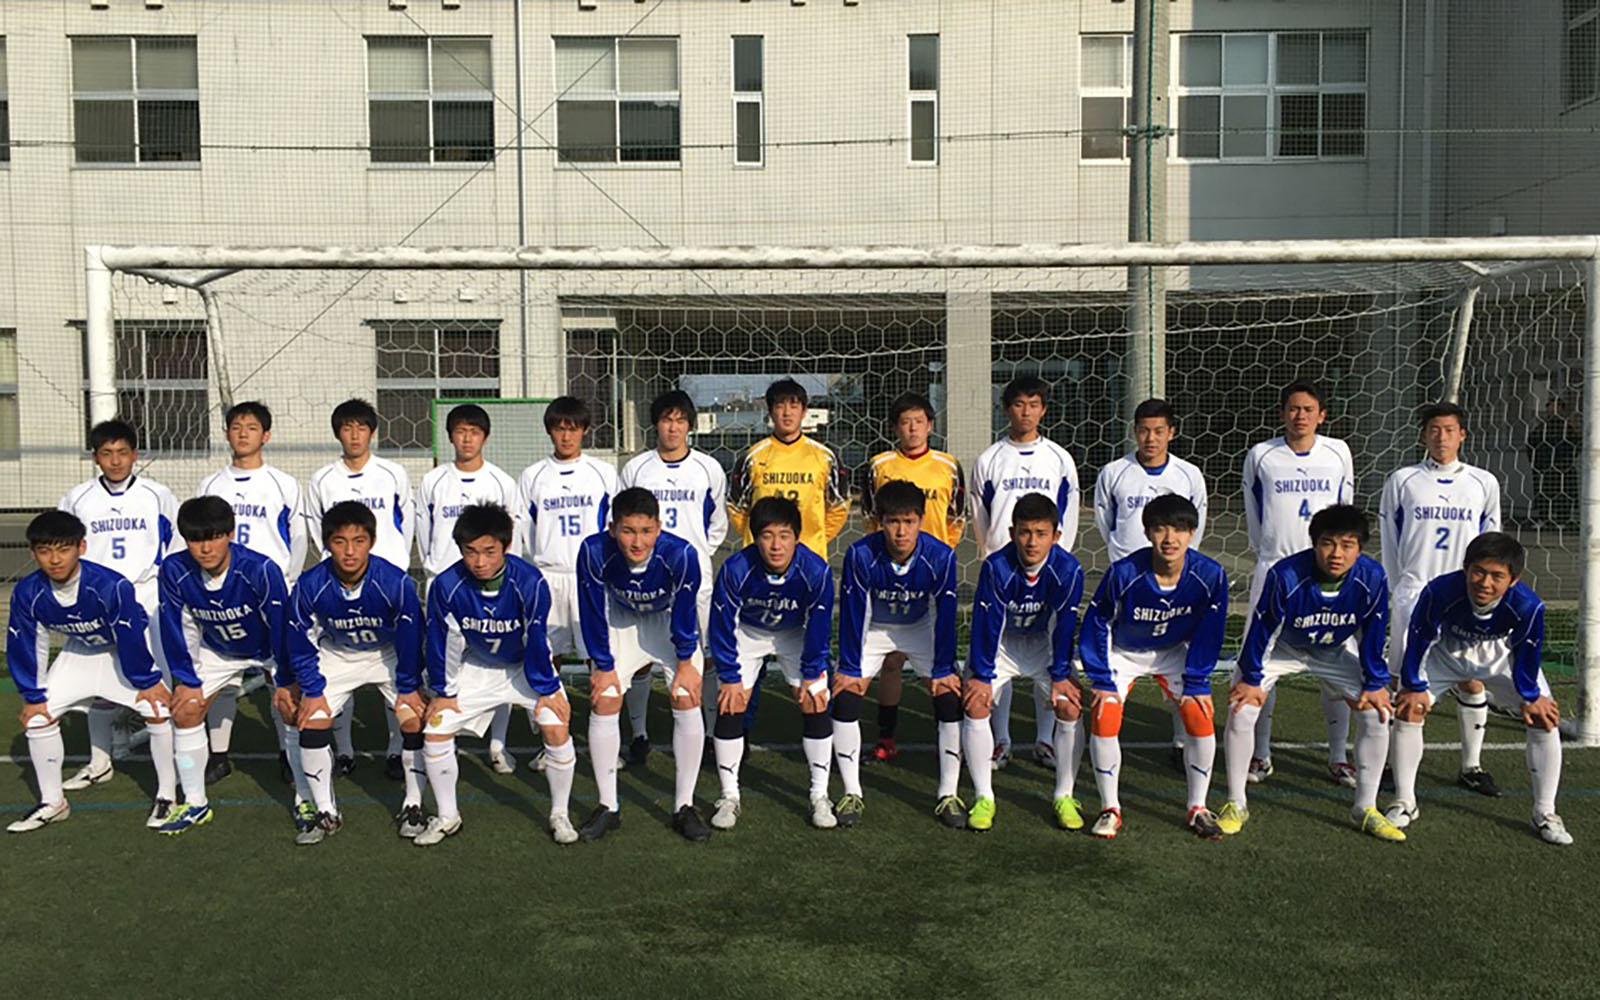 静岡ユース U 18 Shizuoka Selection Team 18 Sbsカップ国際ユースサッカー